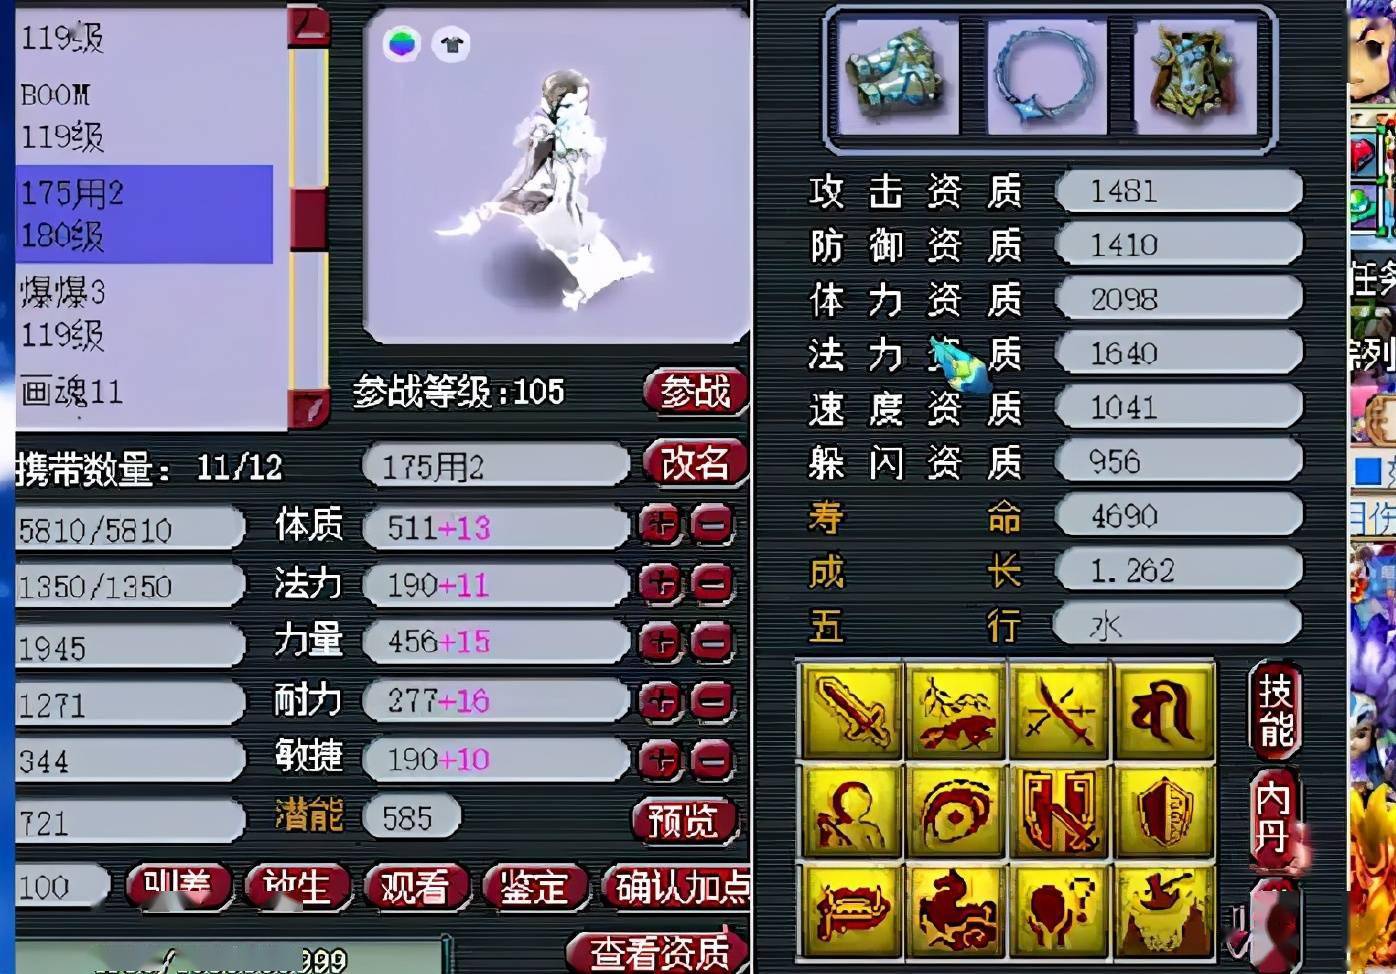 梦幻西游:乐总首次展示109级小号,拥有全服第一画魂宝宝